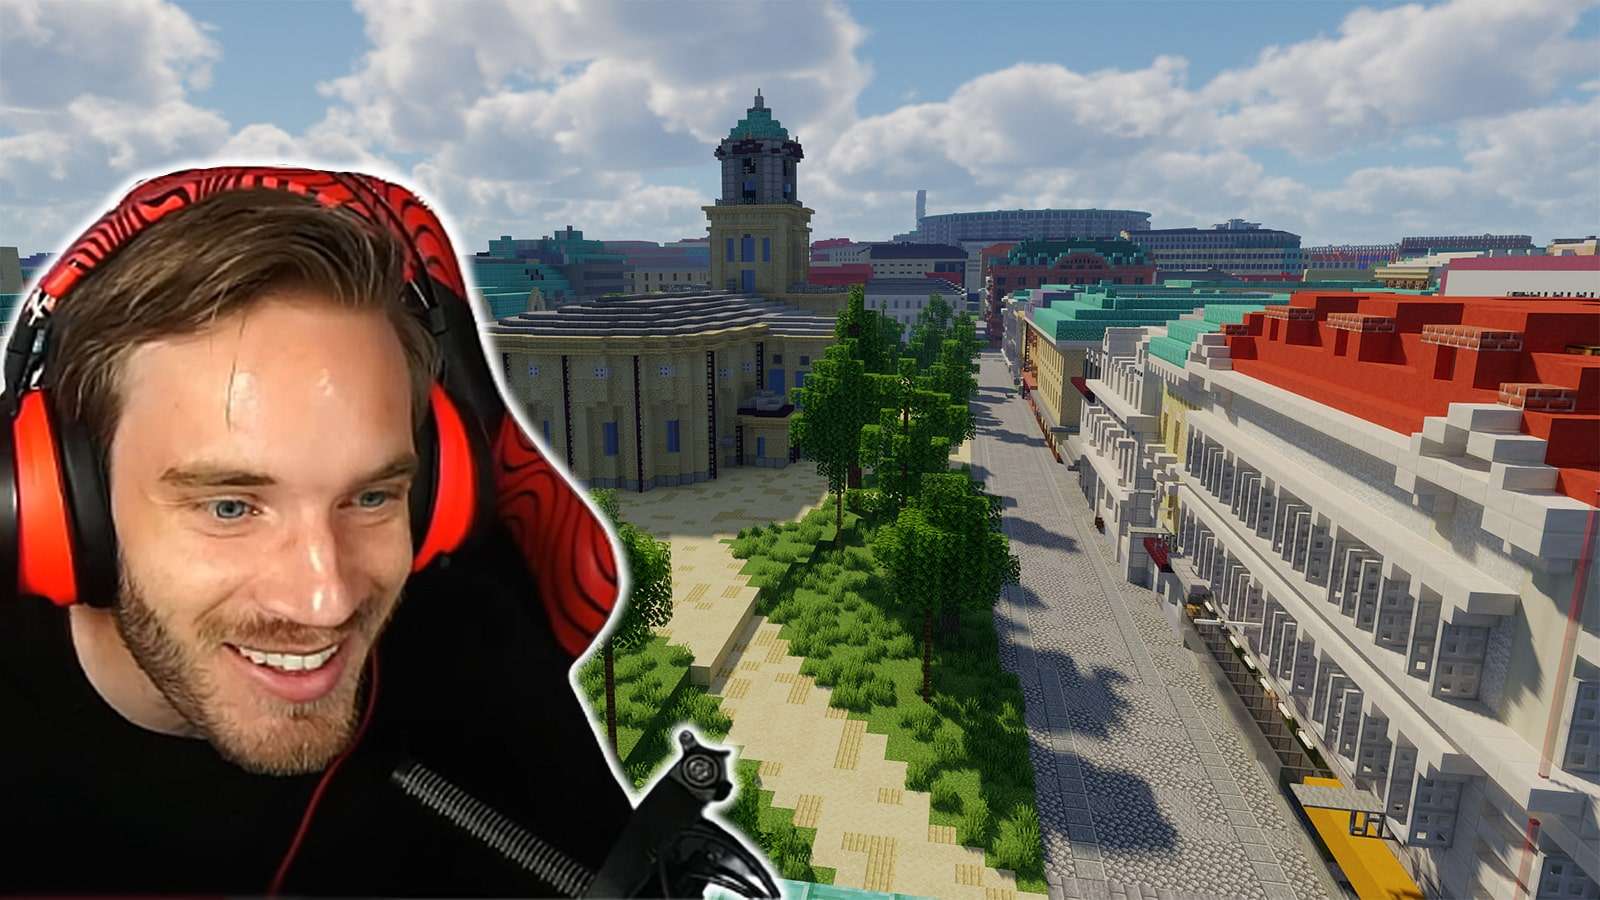 PewDiePie stunned hometown recreation Minecraft